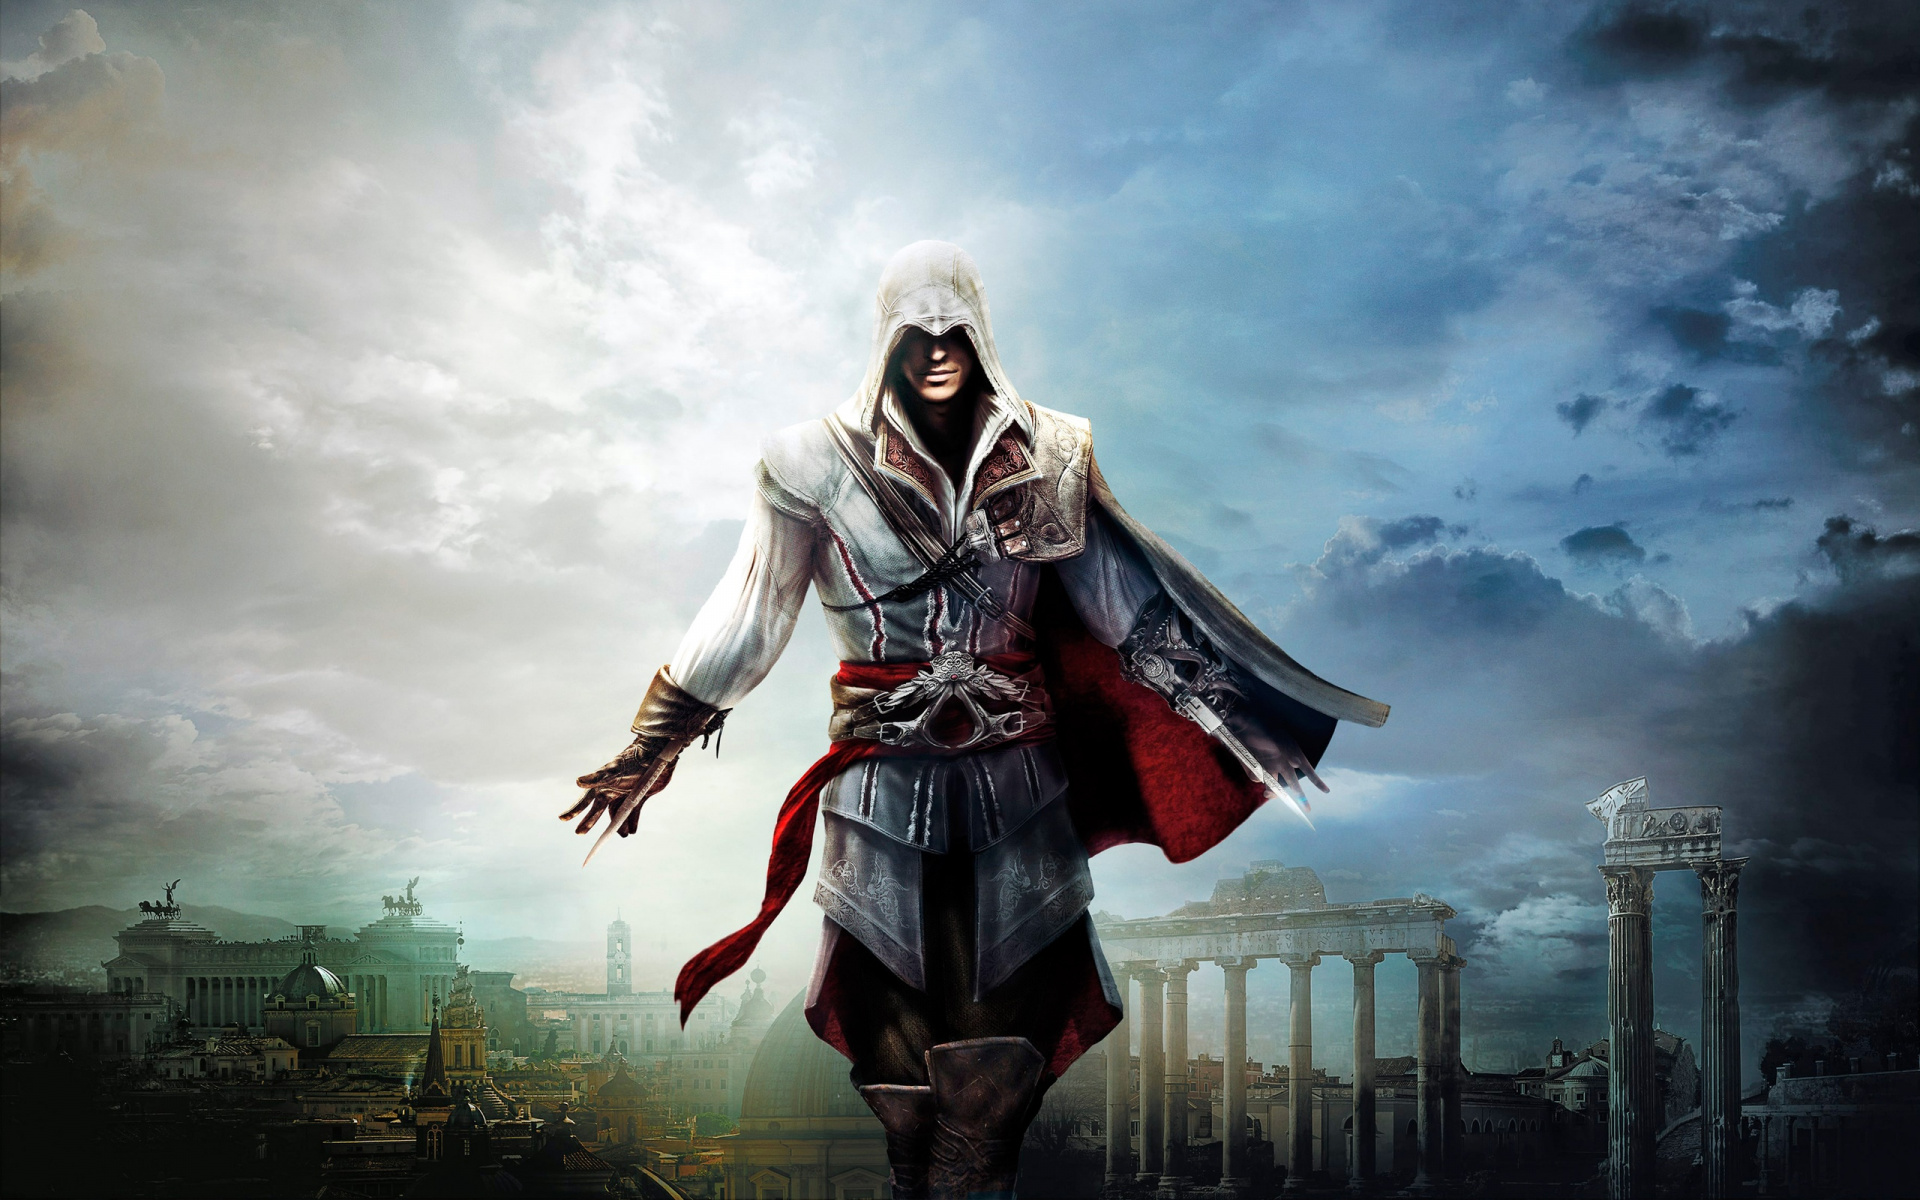 Иллюстрация к игре "Assassin’s Creed"